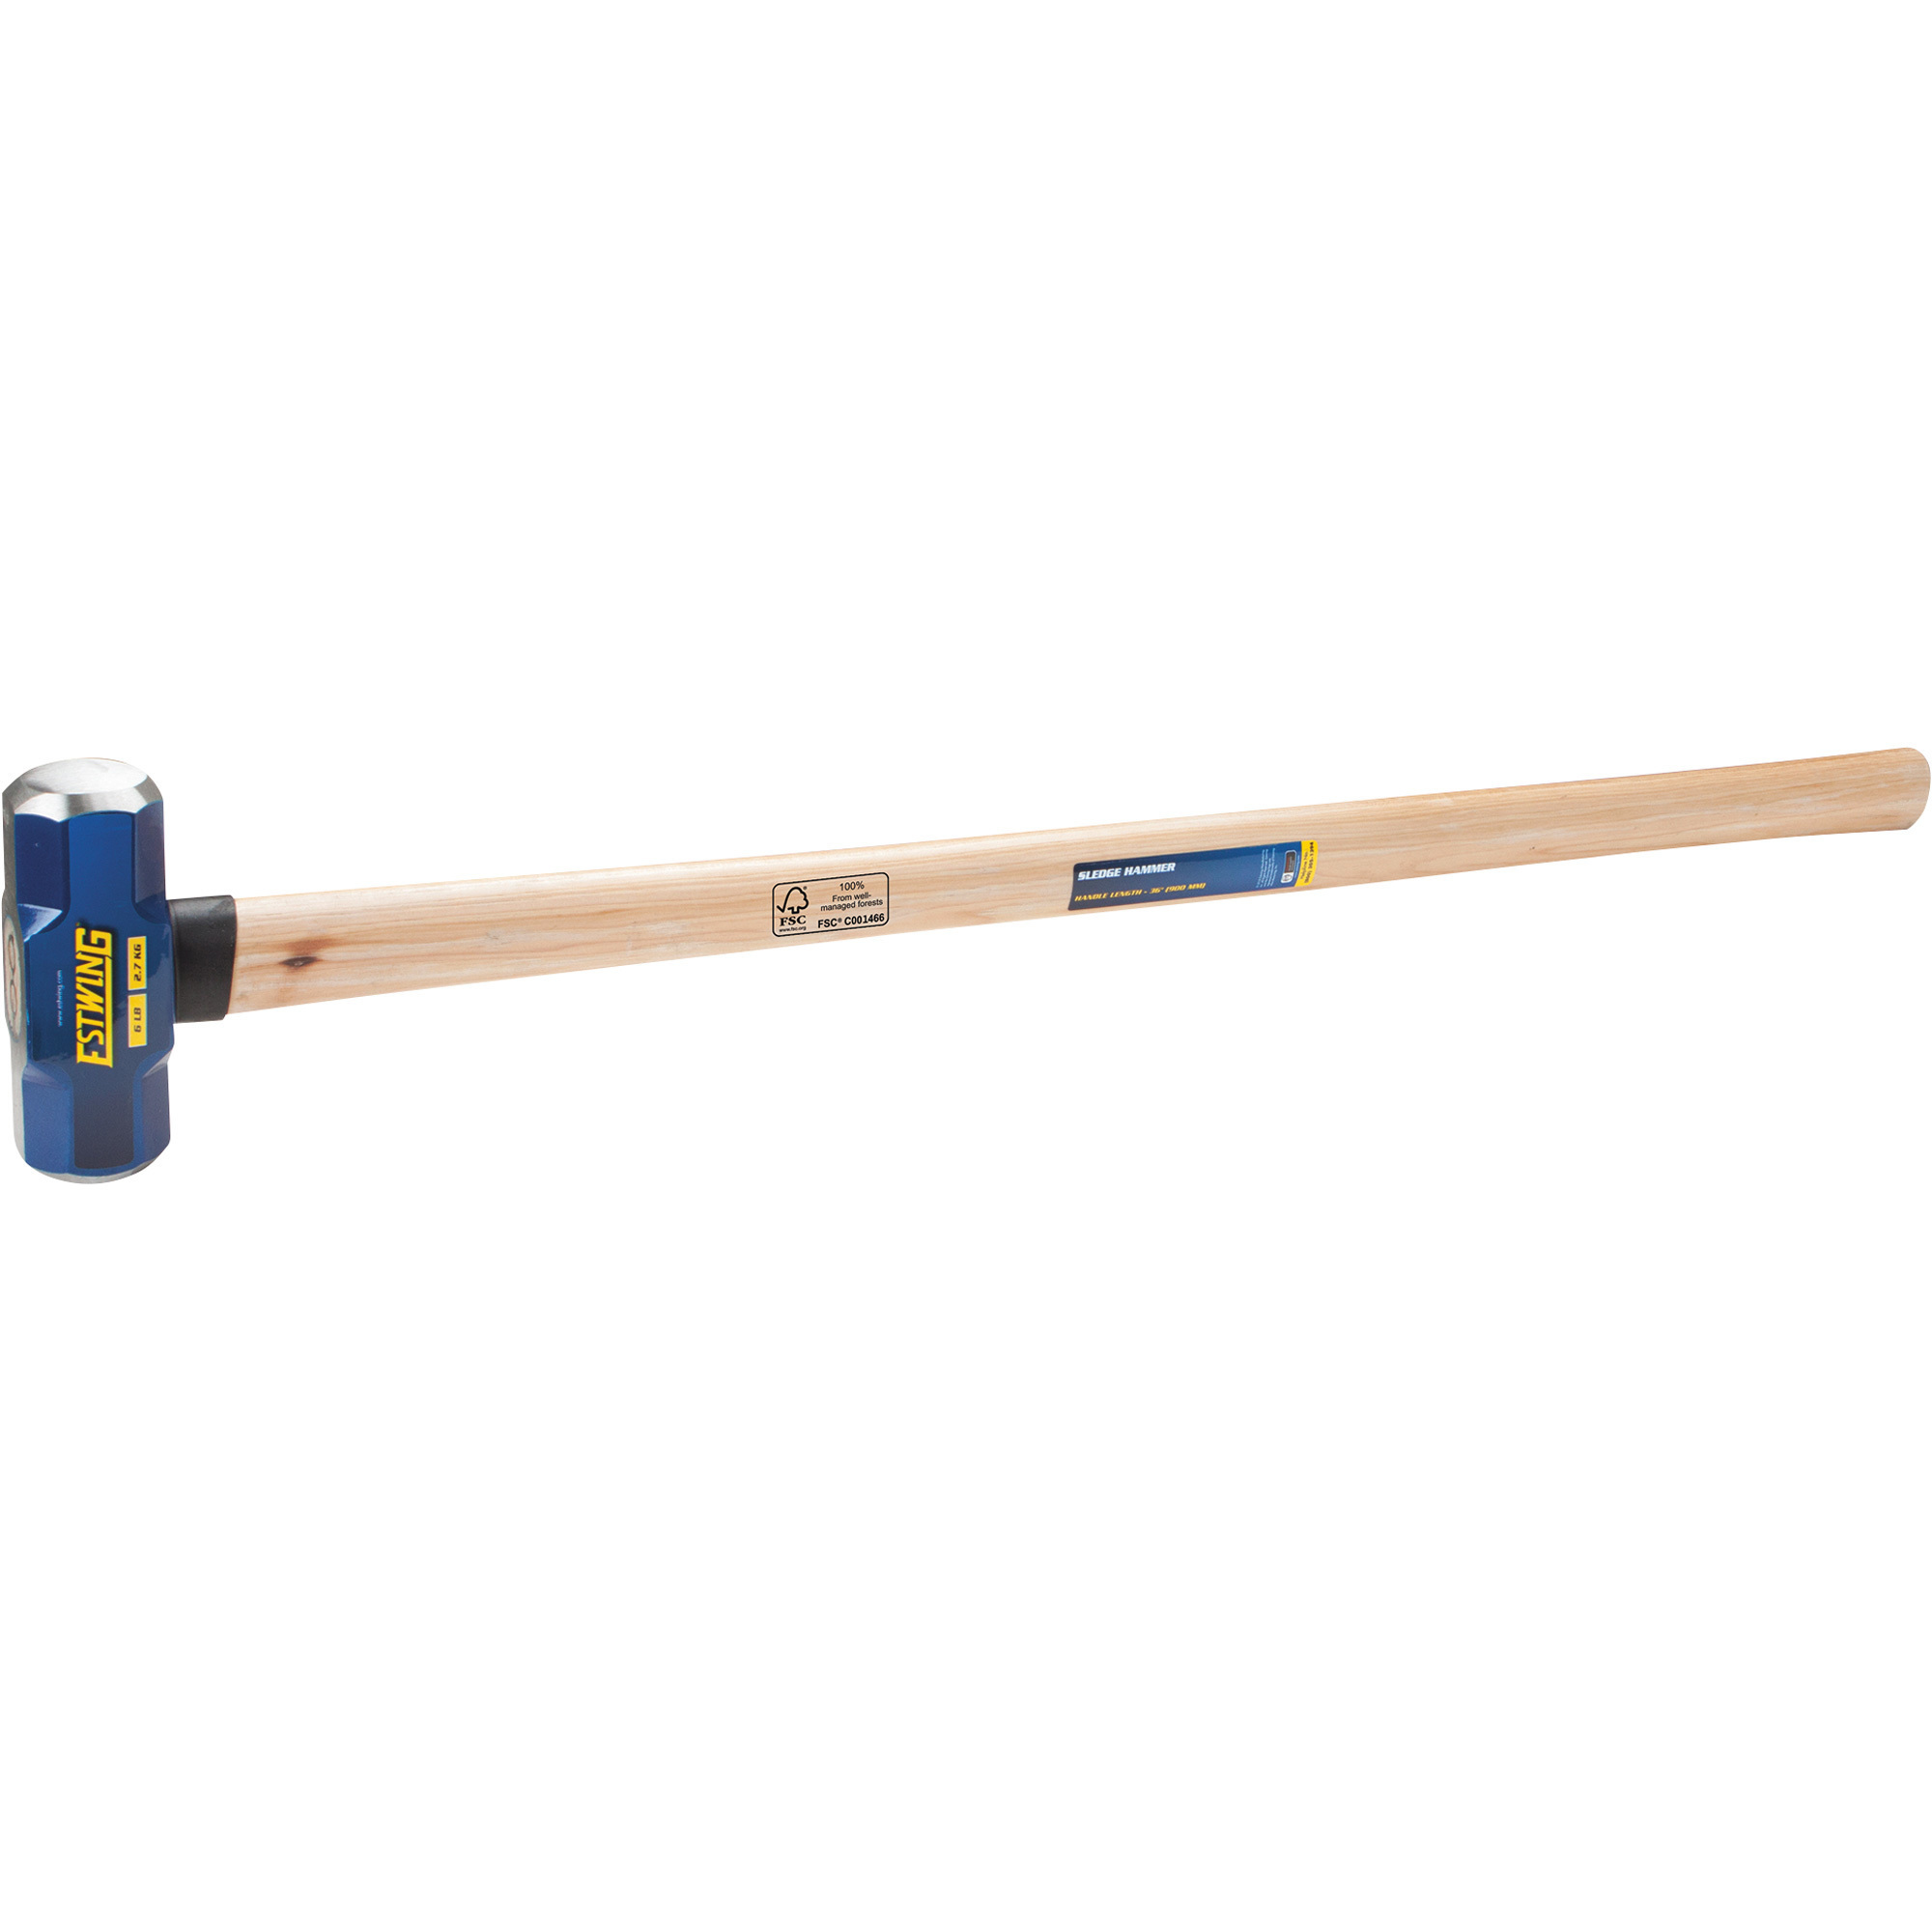 Estwing Sledge Hammer with Wood Handle, 6-Lb., 36Inch L, Model ESH-636W